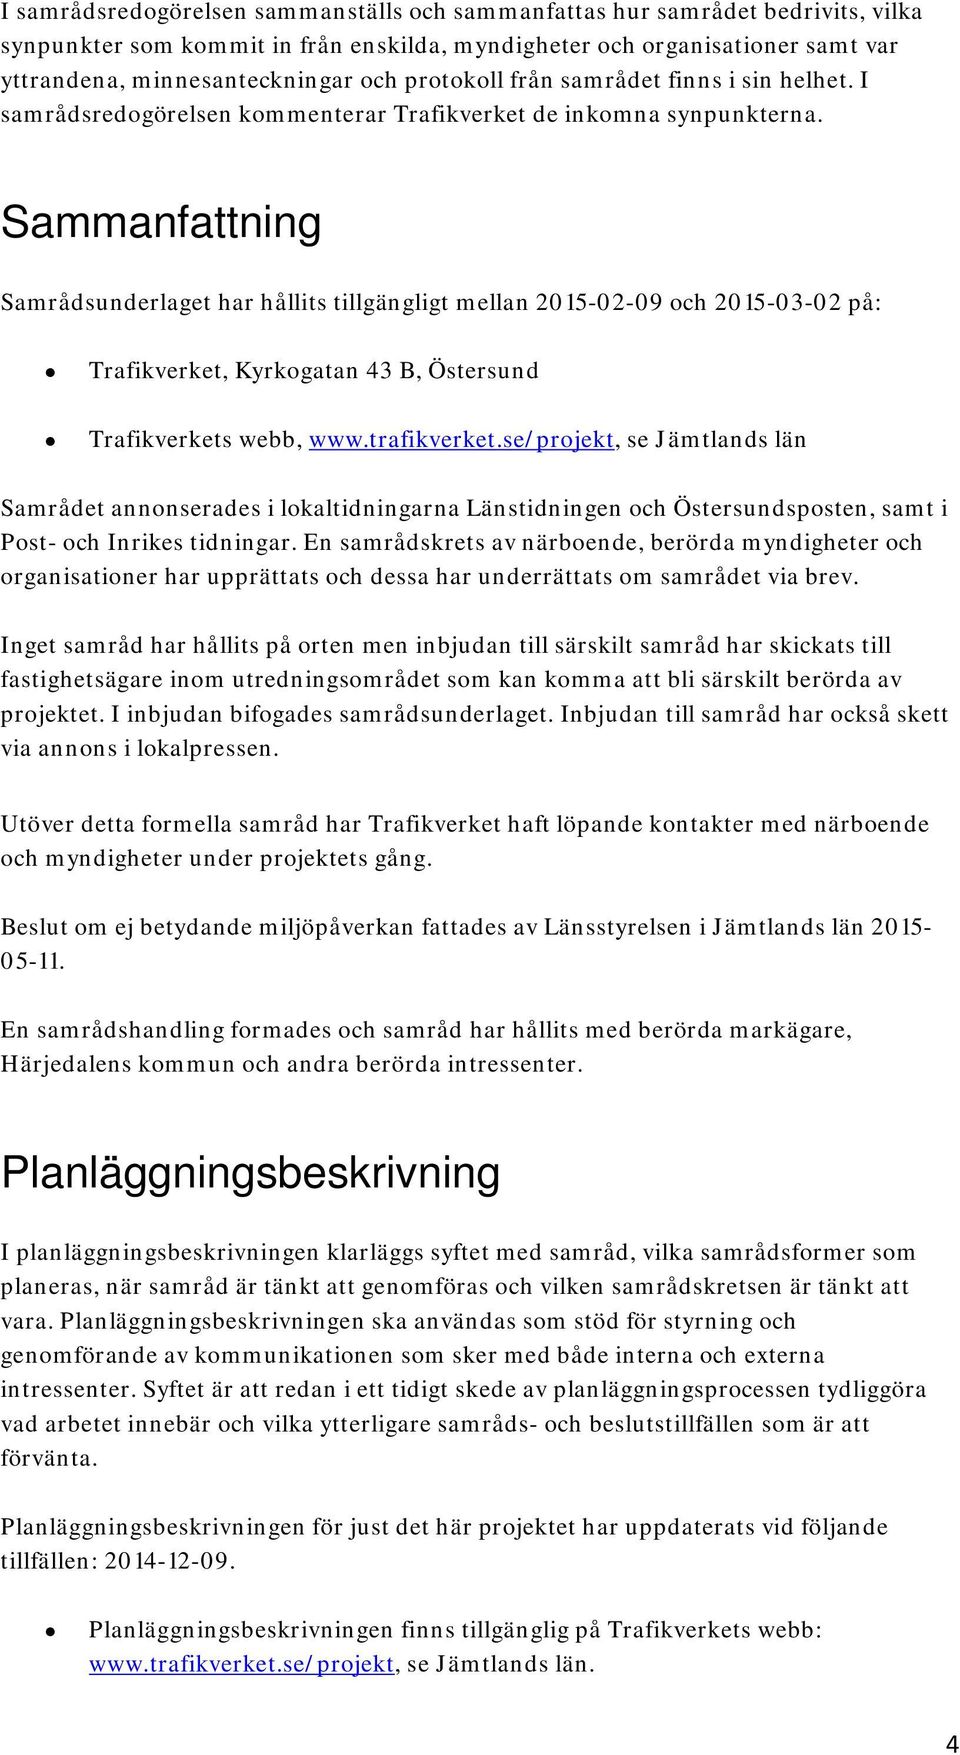 Sammanfattning Samrådsunderlaget har hållits tillgängligt mellan 2015-02-09 och 2015-03-02 på: Trafikverket, Kyrkogatan 43 B, Östersund Trafikverkets webb, www.trafikverket.